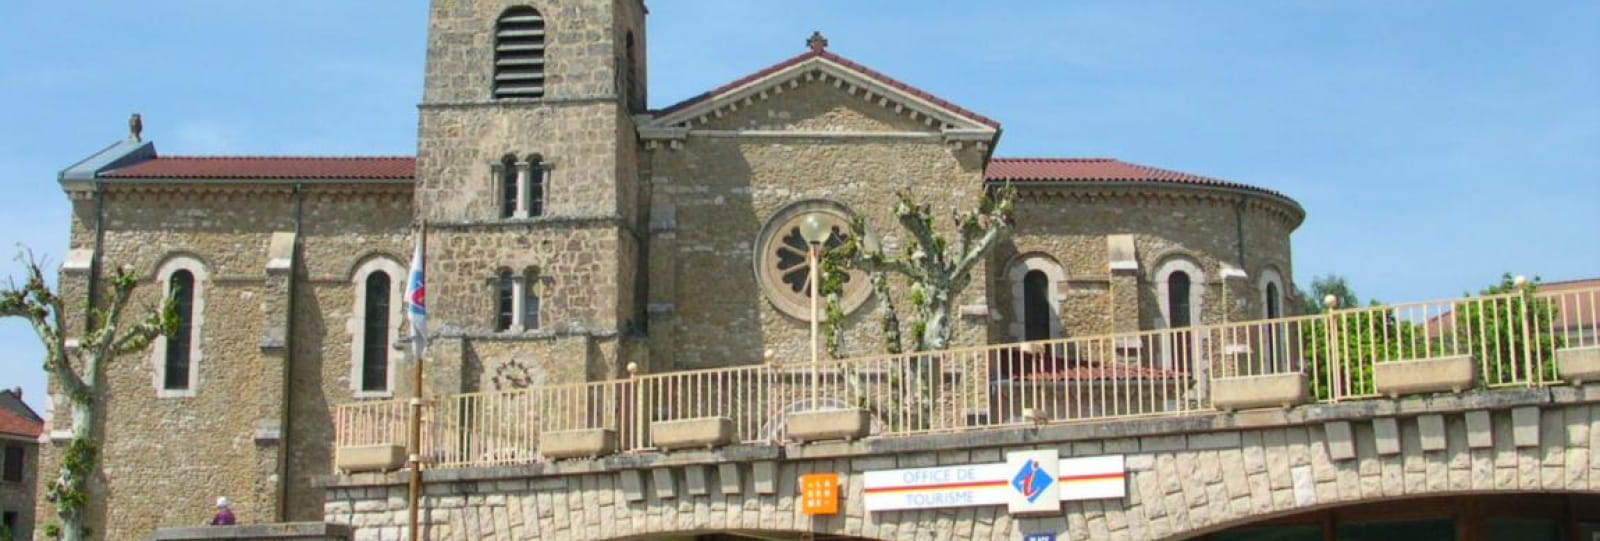 Office de Tourisme Vercors Drôme - Bureau d’Information Touristique La Chapelle en Vercors